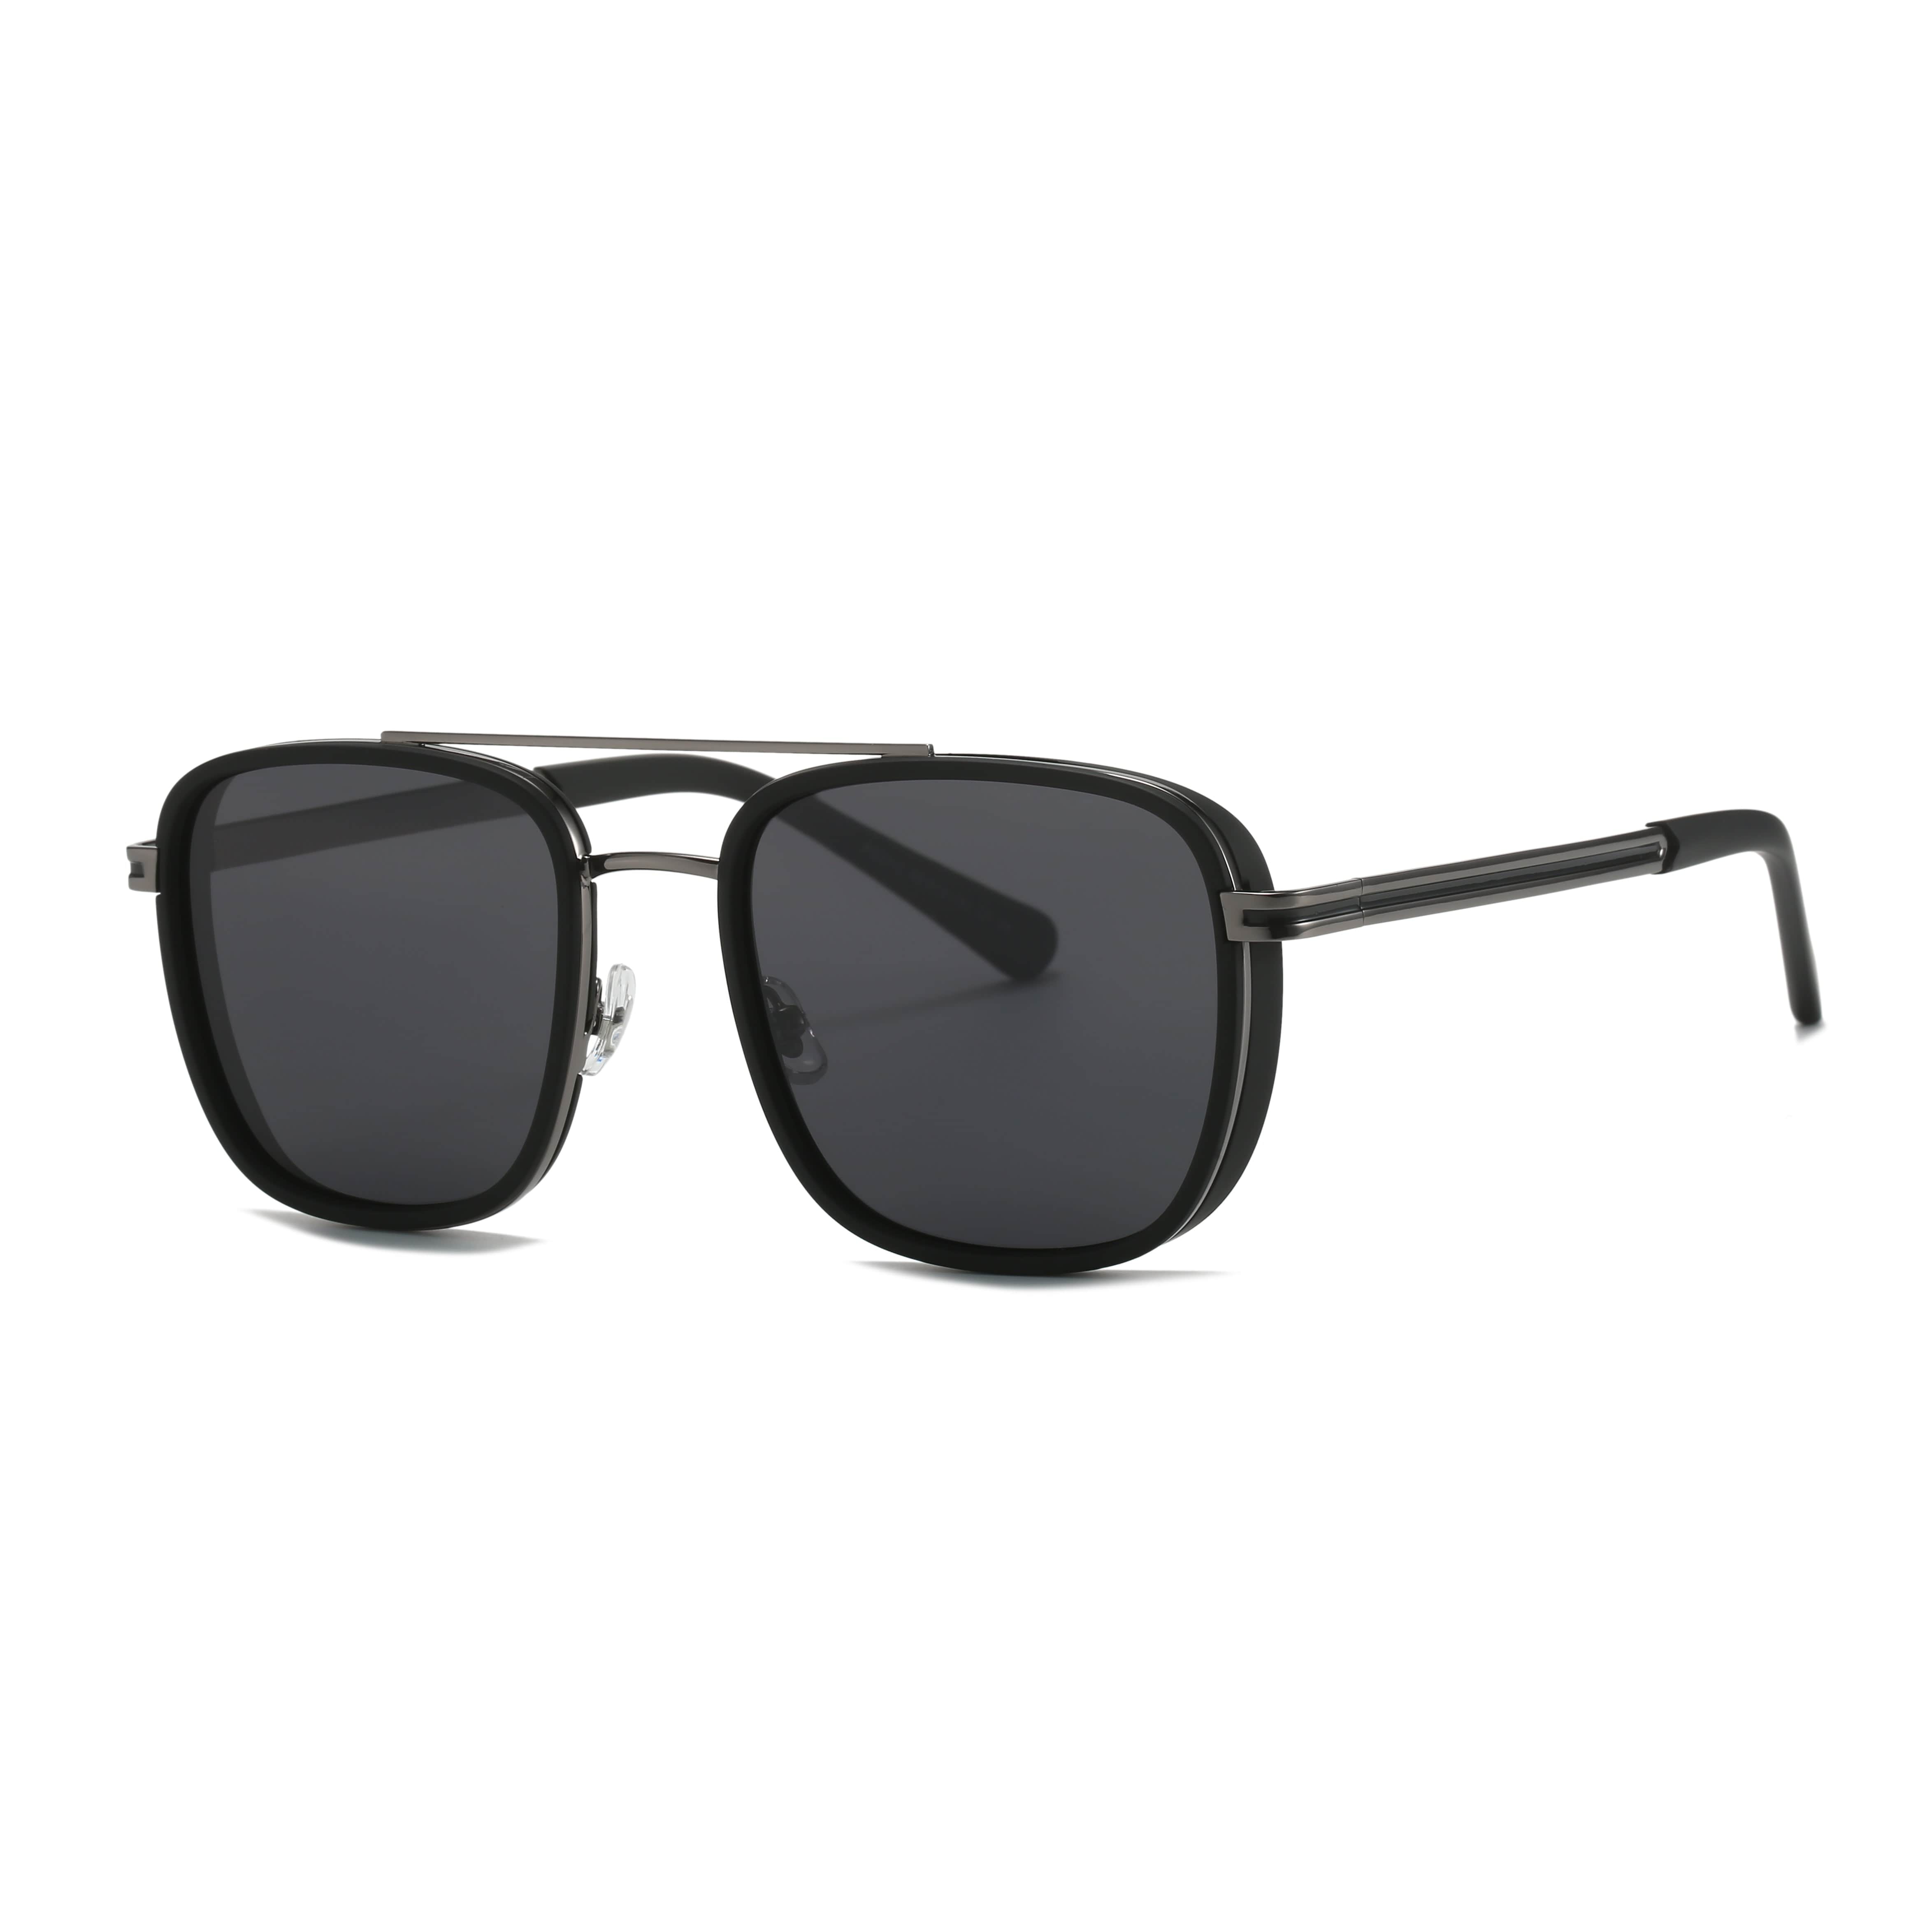 GIUSTIZIERI VECCHI Sunglasses Medium / Black RegalRose Uno